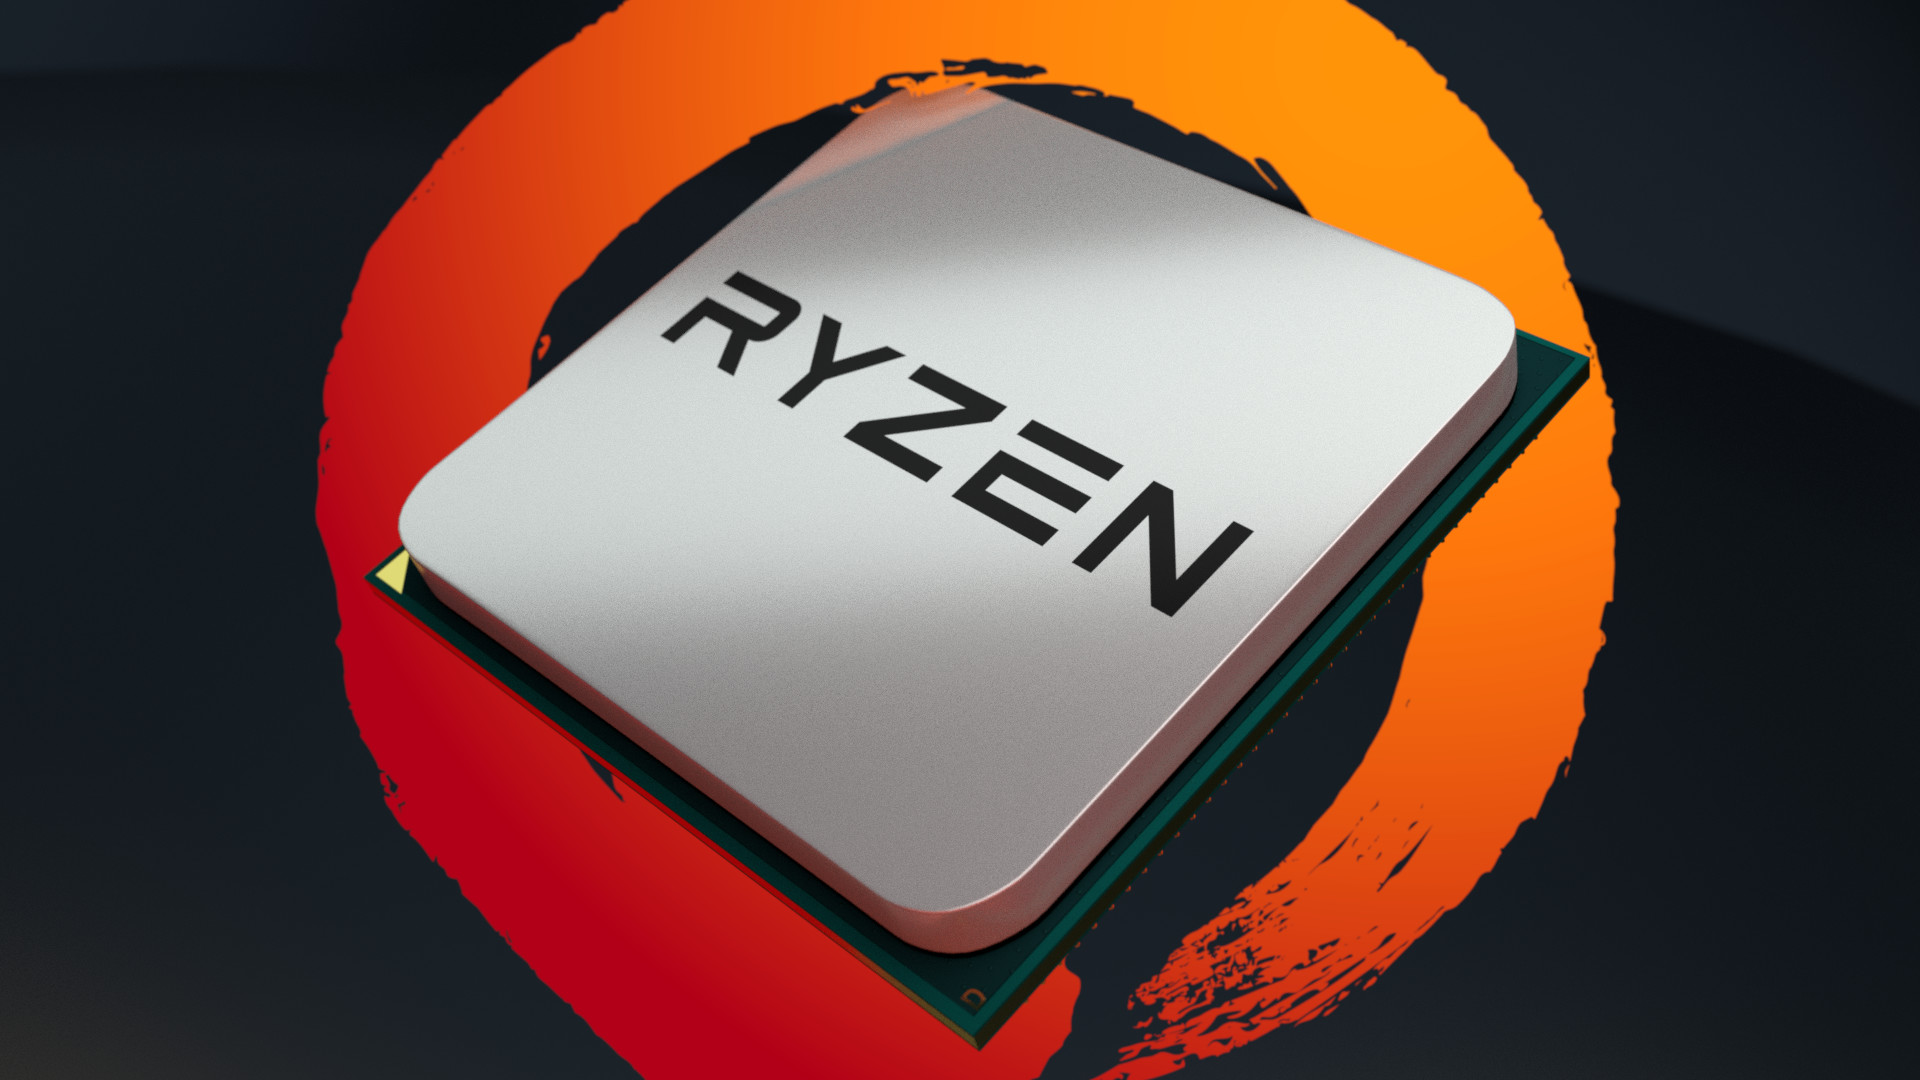 AMD Radeon Wallpaper mania! UPDATED! | TechPowerUp Forums